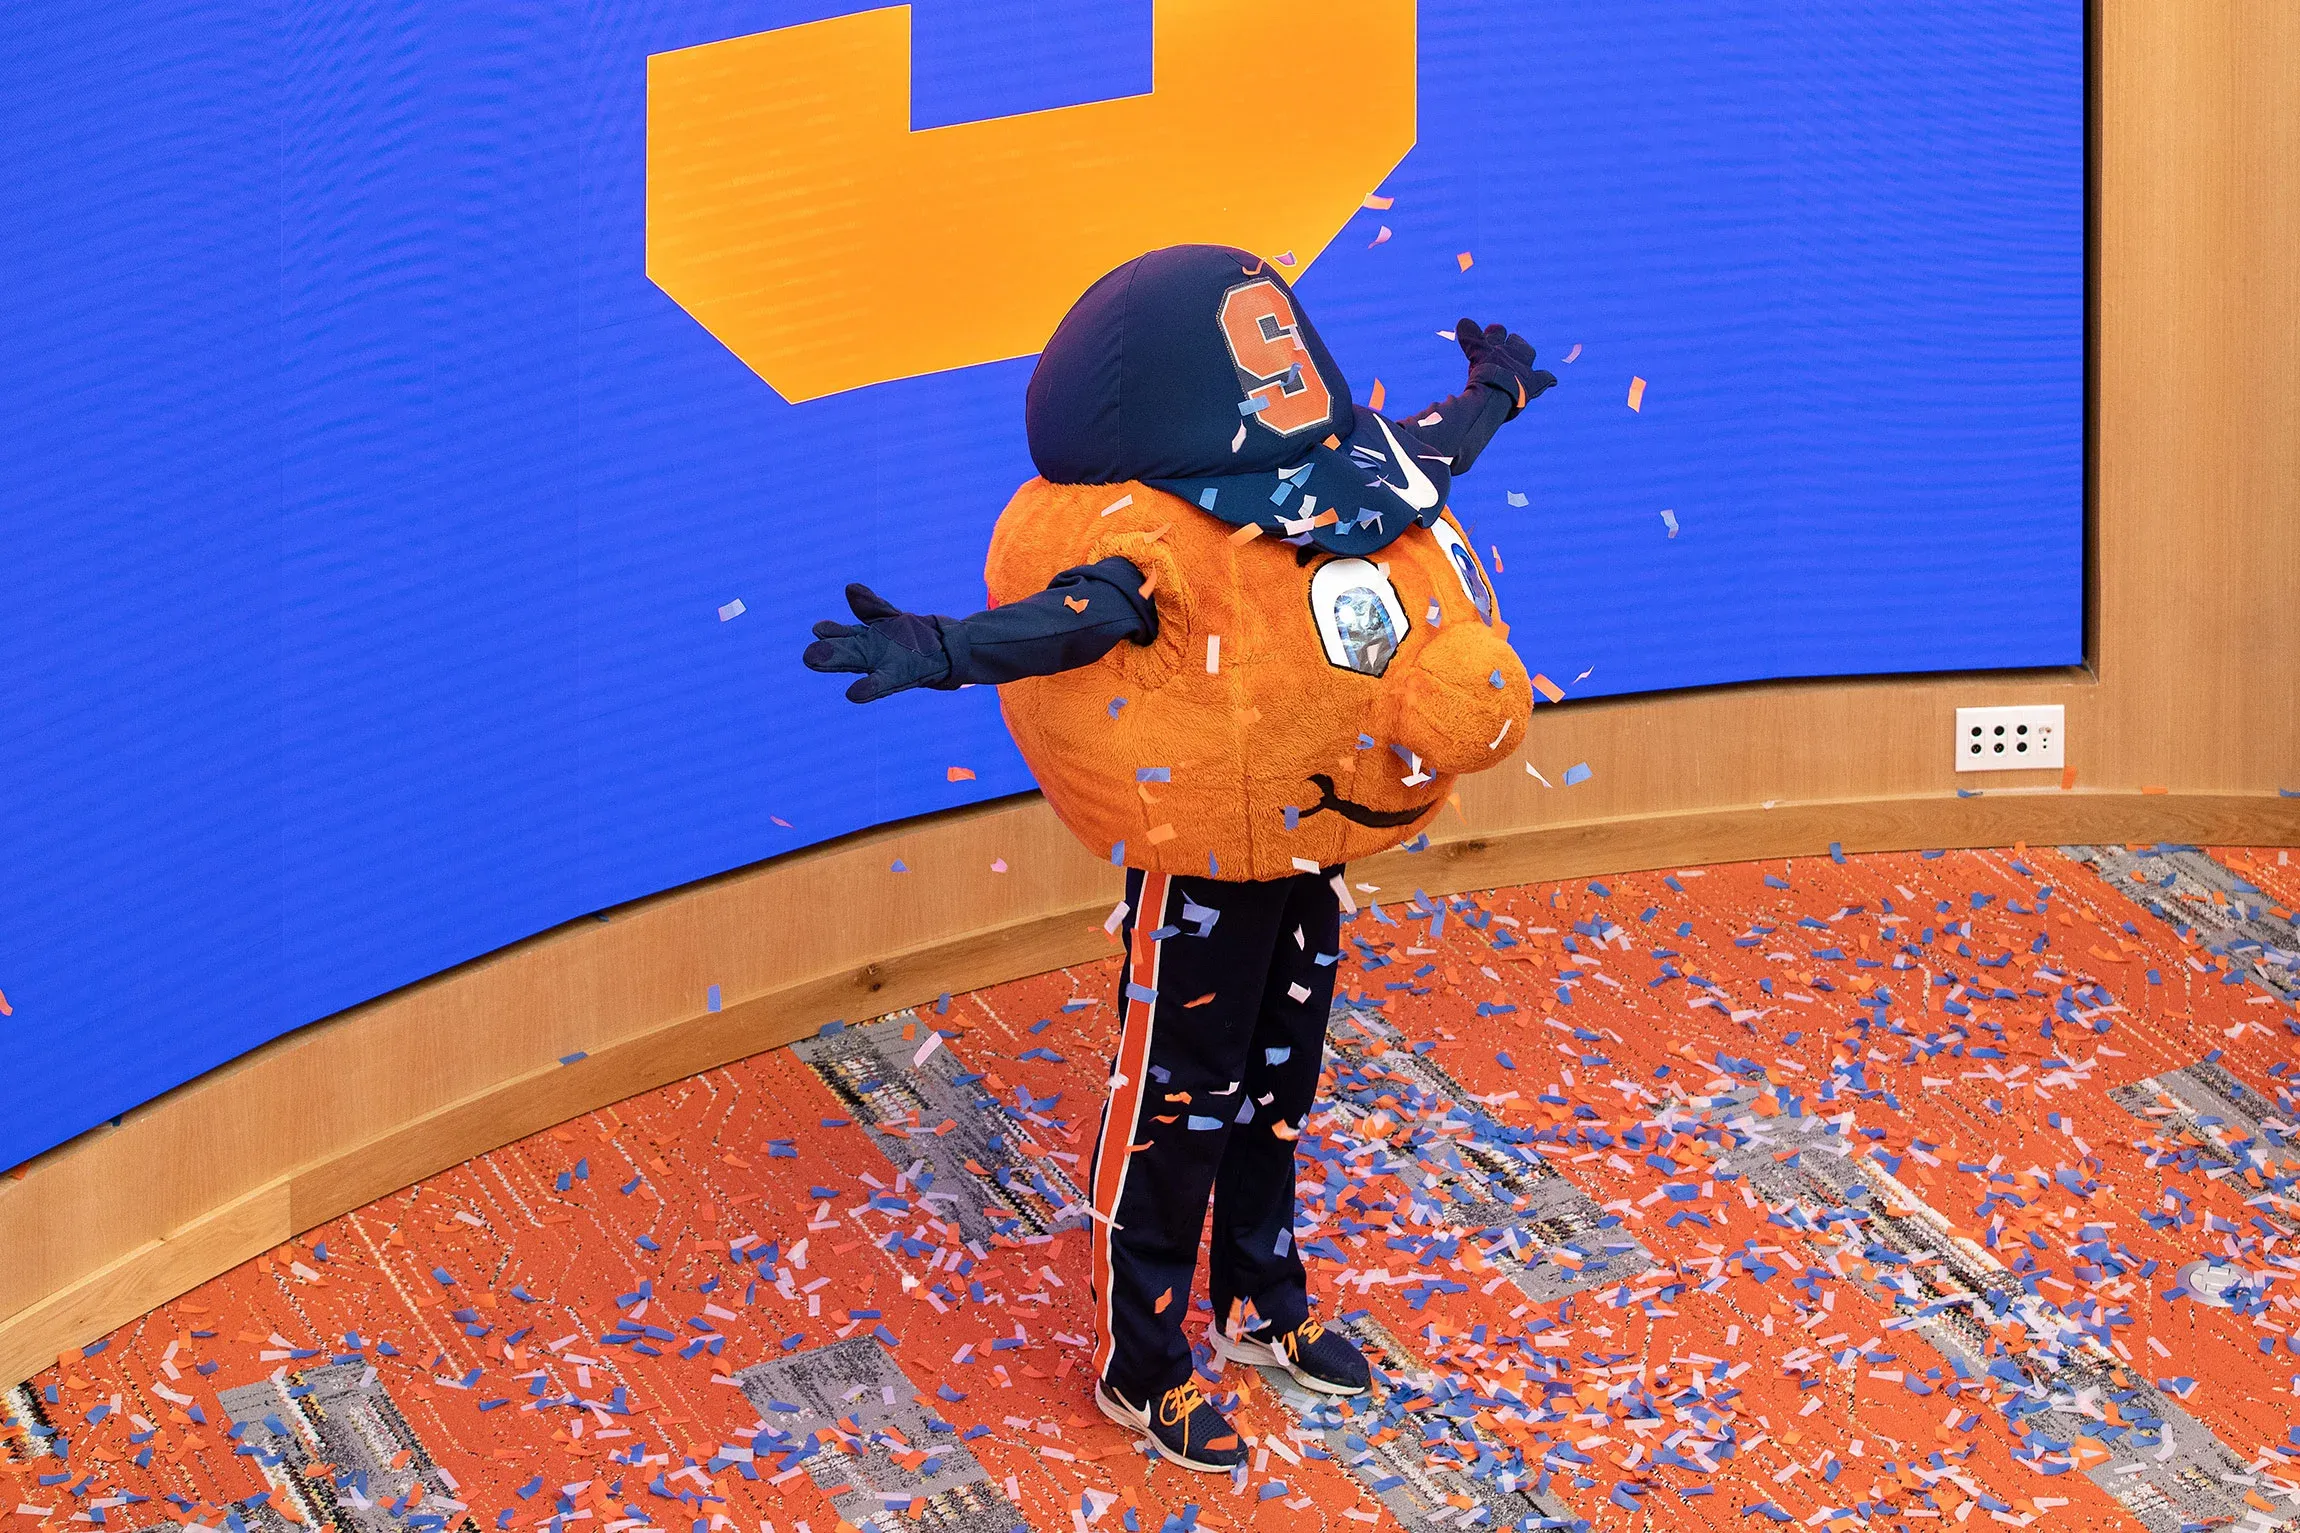 Otto dancing in confetti.